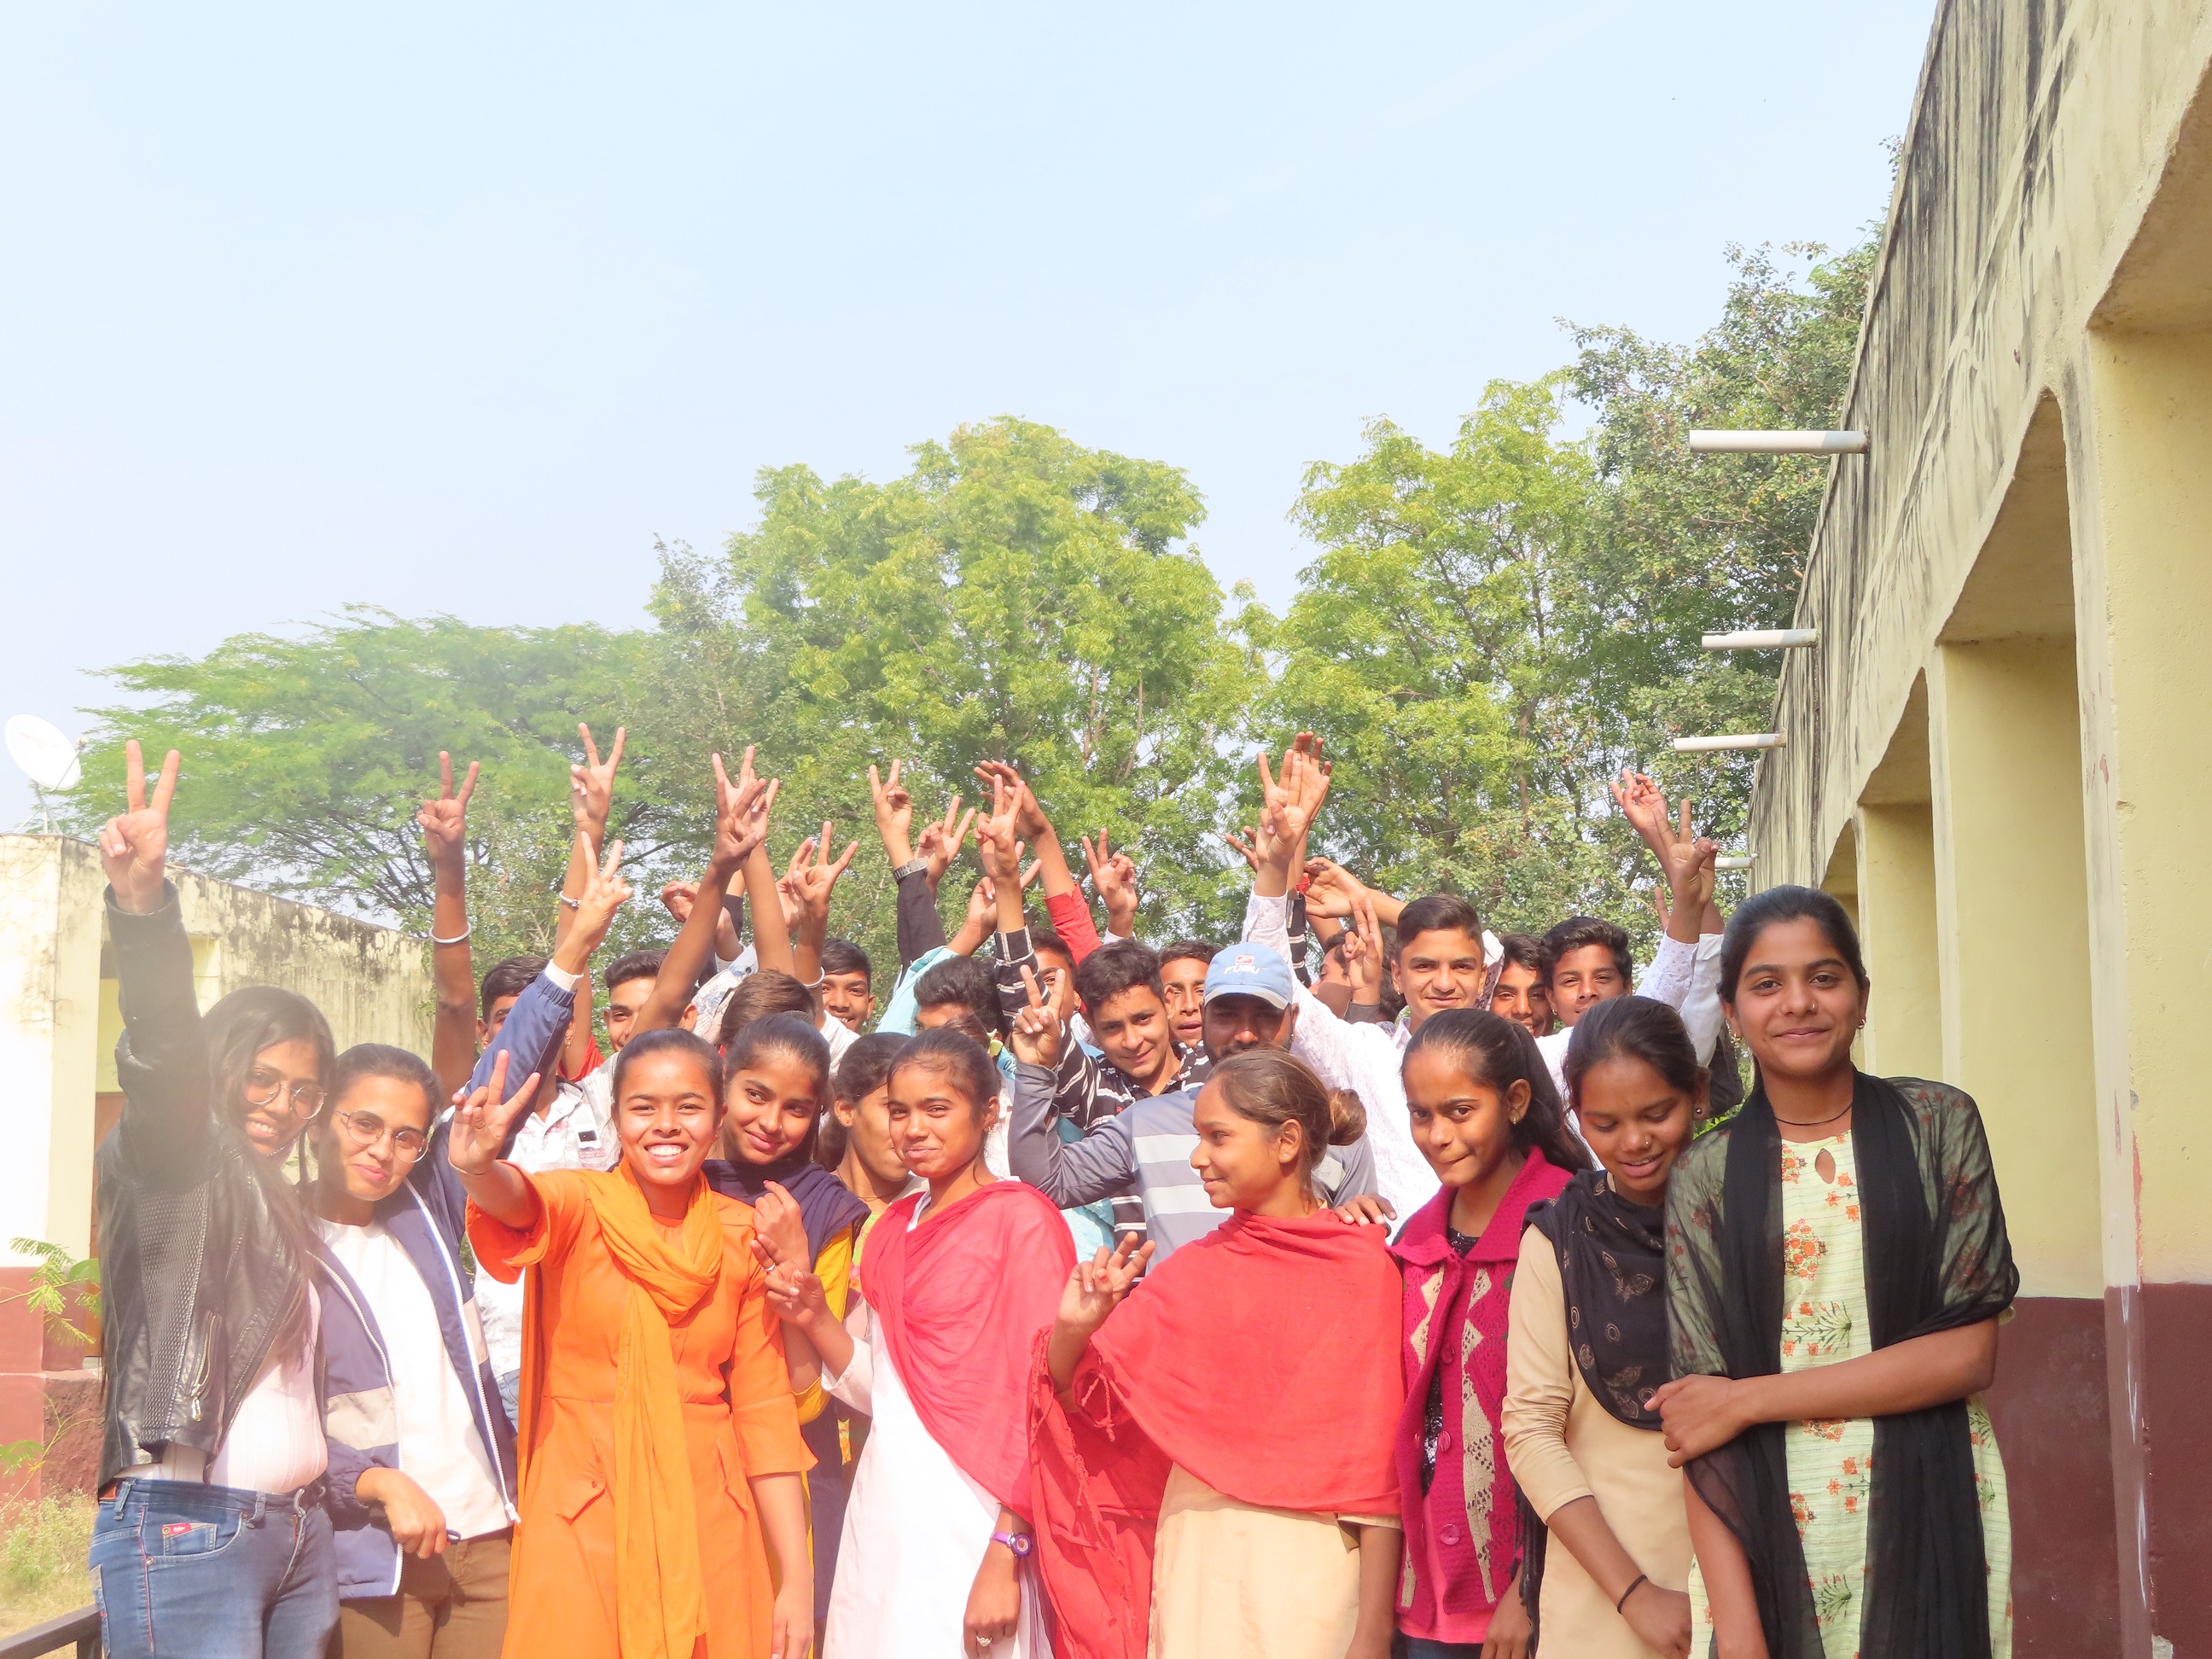 हिंदुस्तान जिंक ने शिक्षा सम्बल अभियान के अंतर्गत चलाई शीतकालीन कक्षाएँ